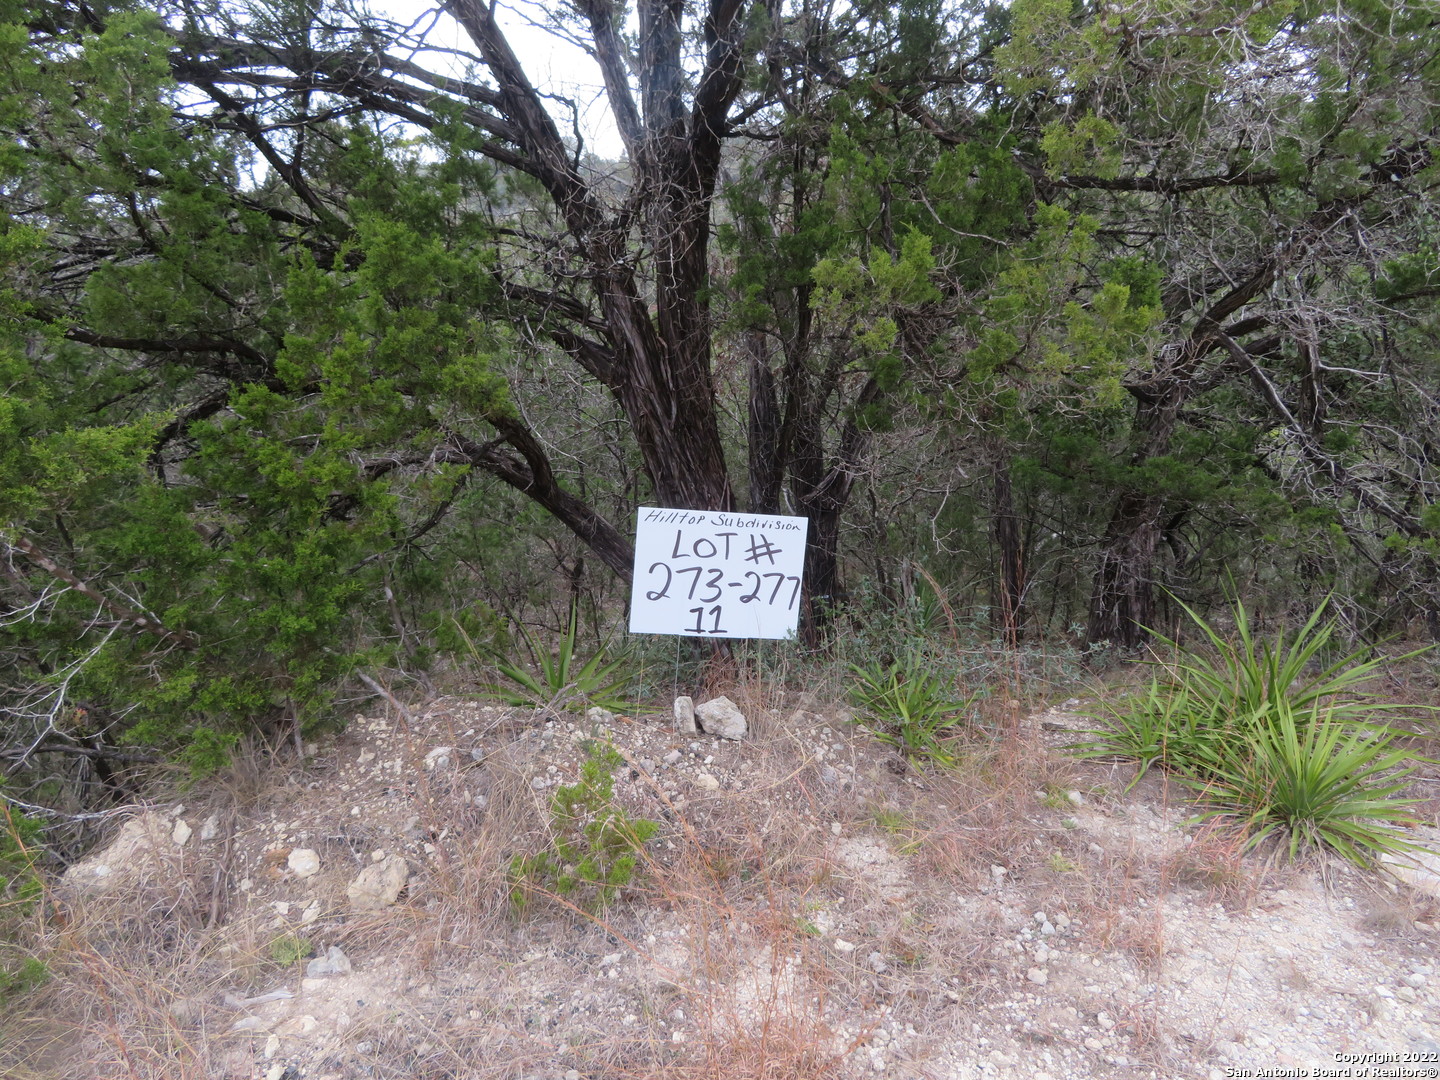 Photo of Lot 273-277 &11 Panchitas Wy in Lakehills, TX